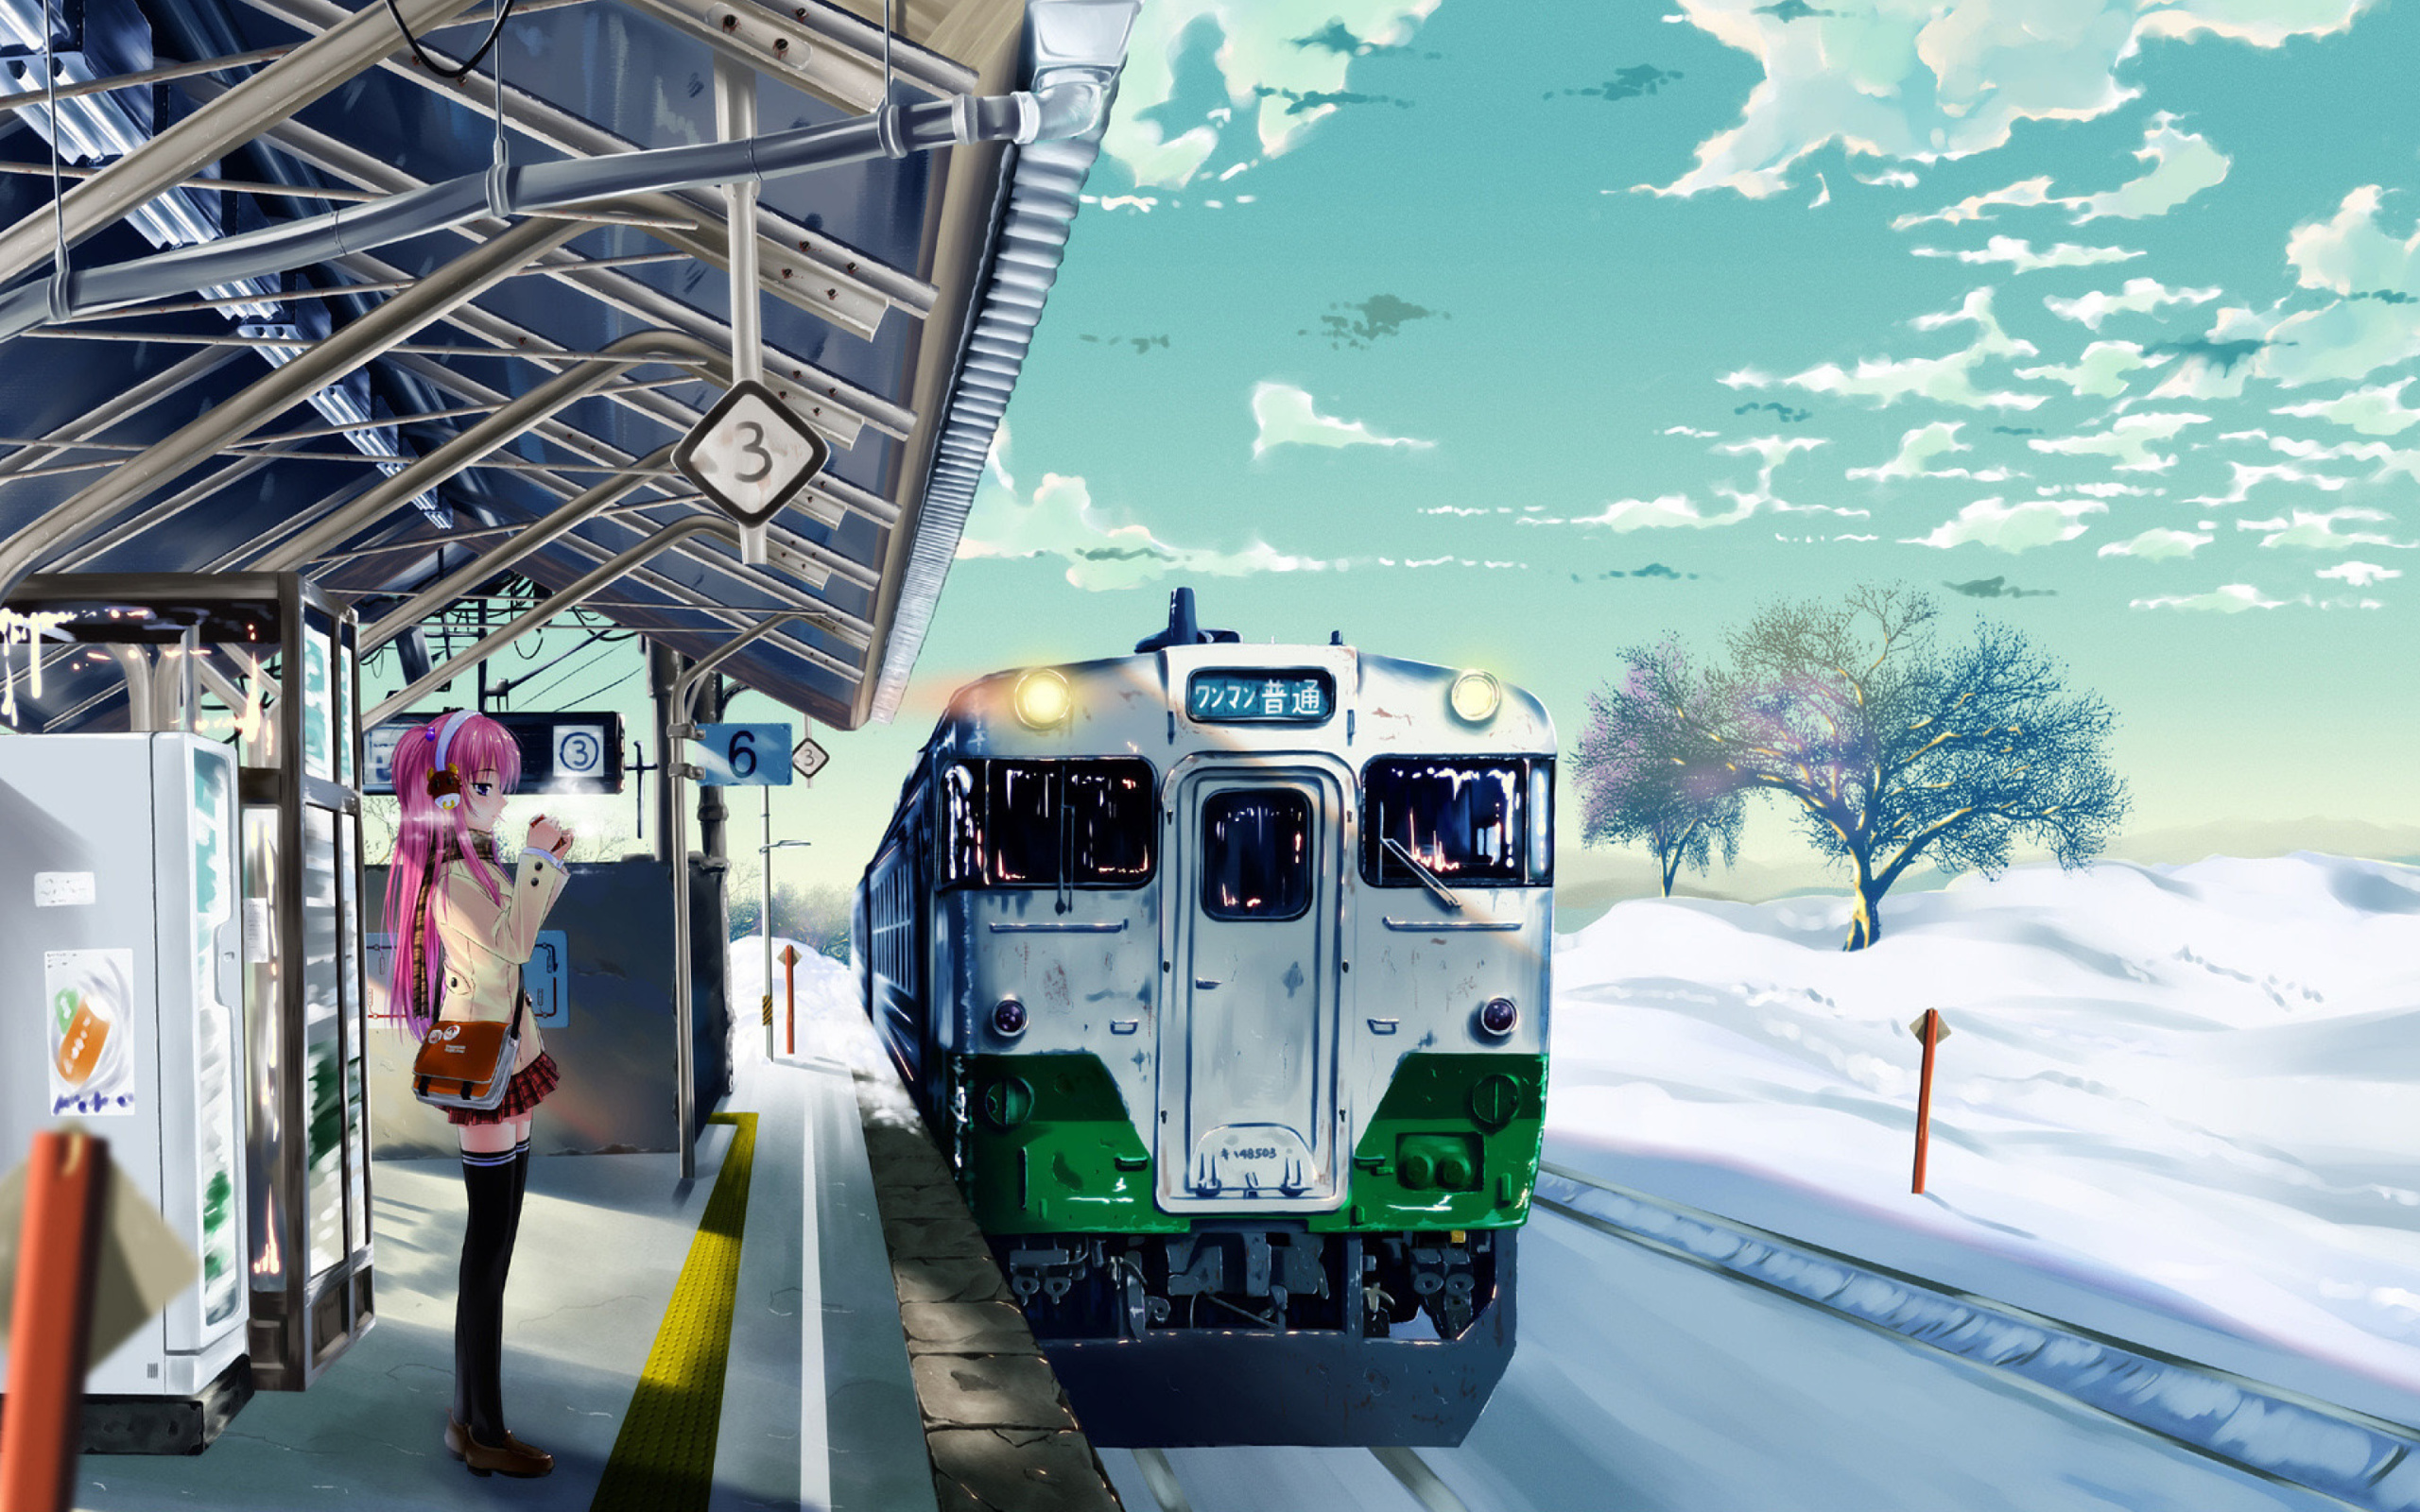 Обои Anime Girl on Snow Train Stations 2560x1600